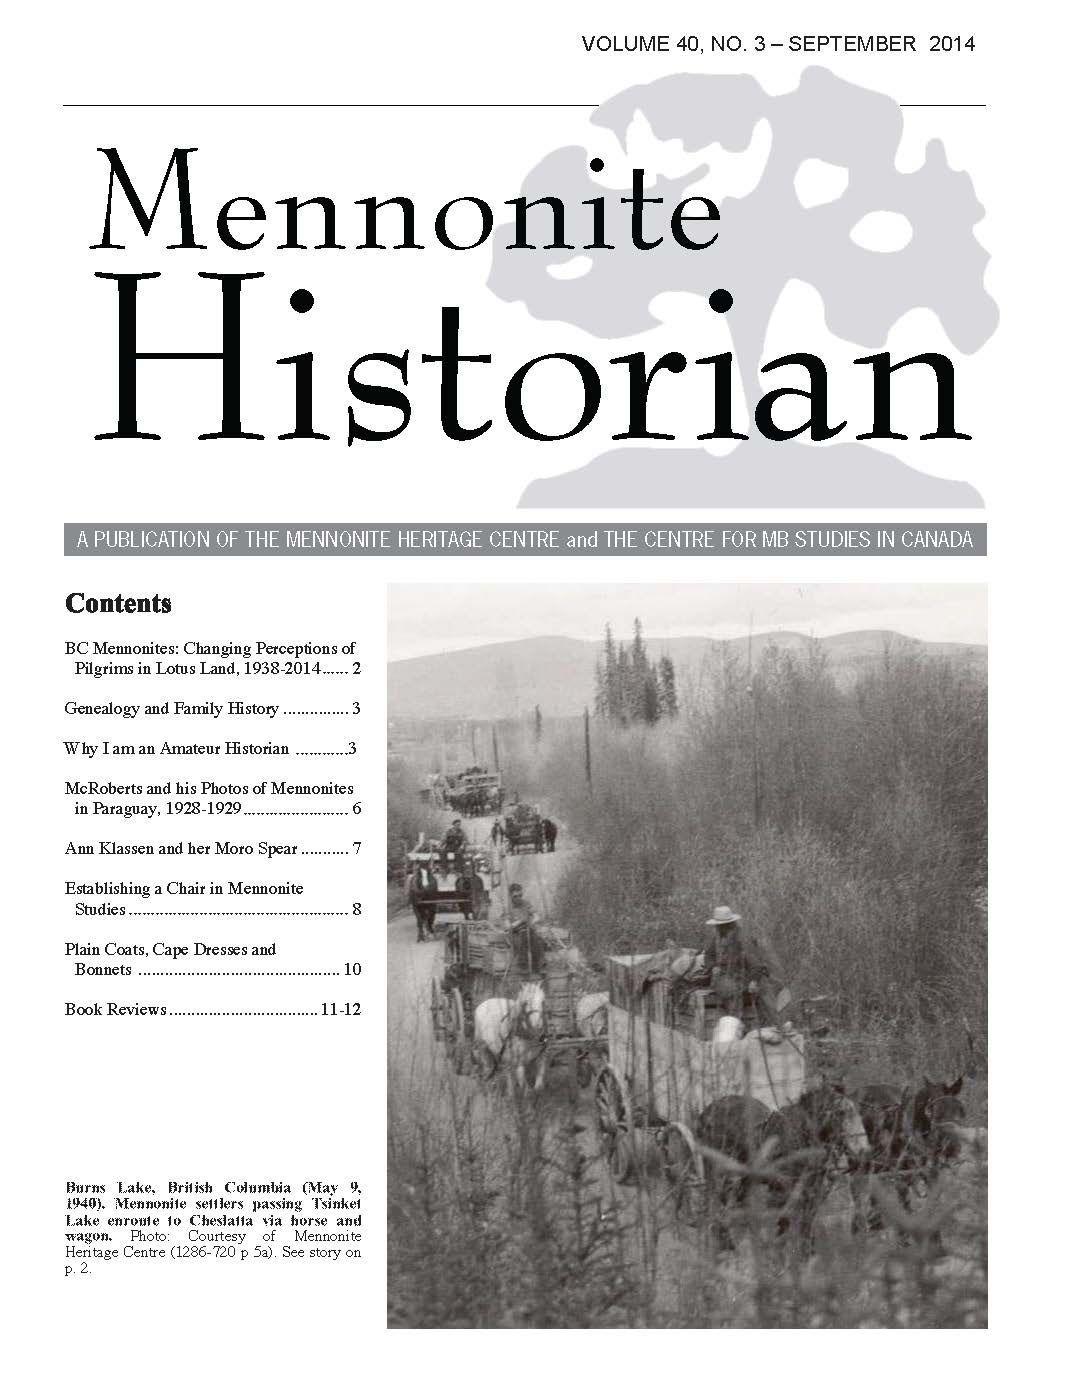 Mennonite Historian (September 2014)